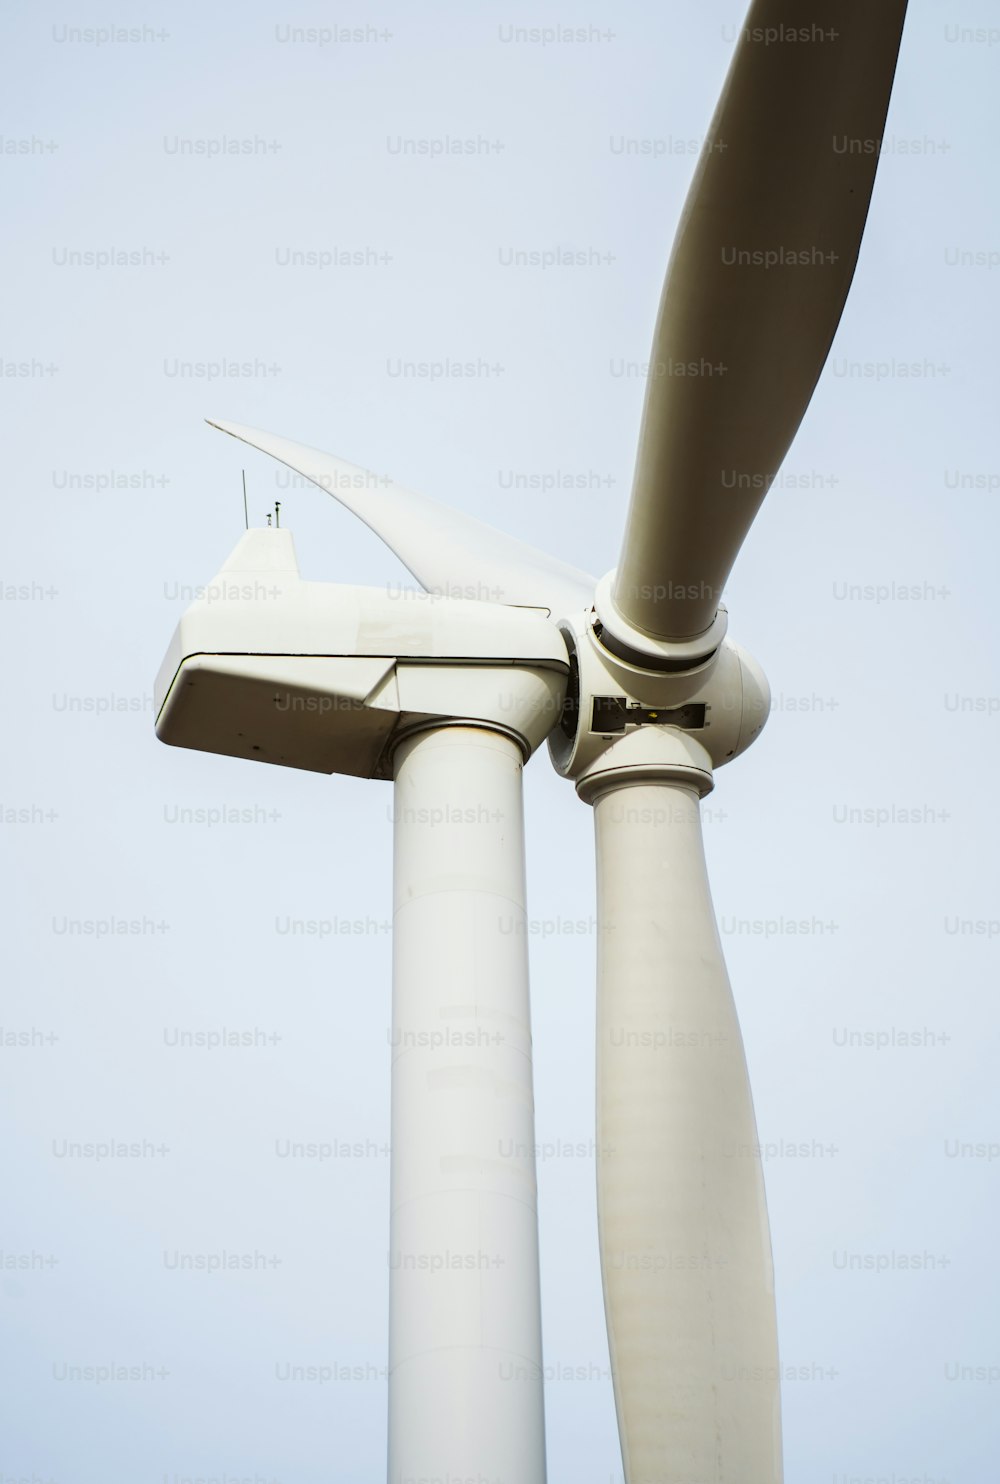 um close up de uma turbina eólica em um dia claro